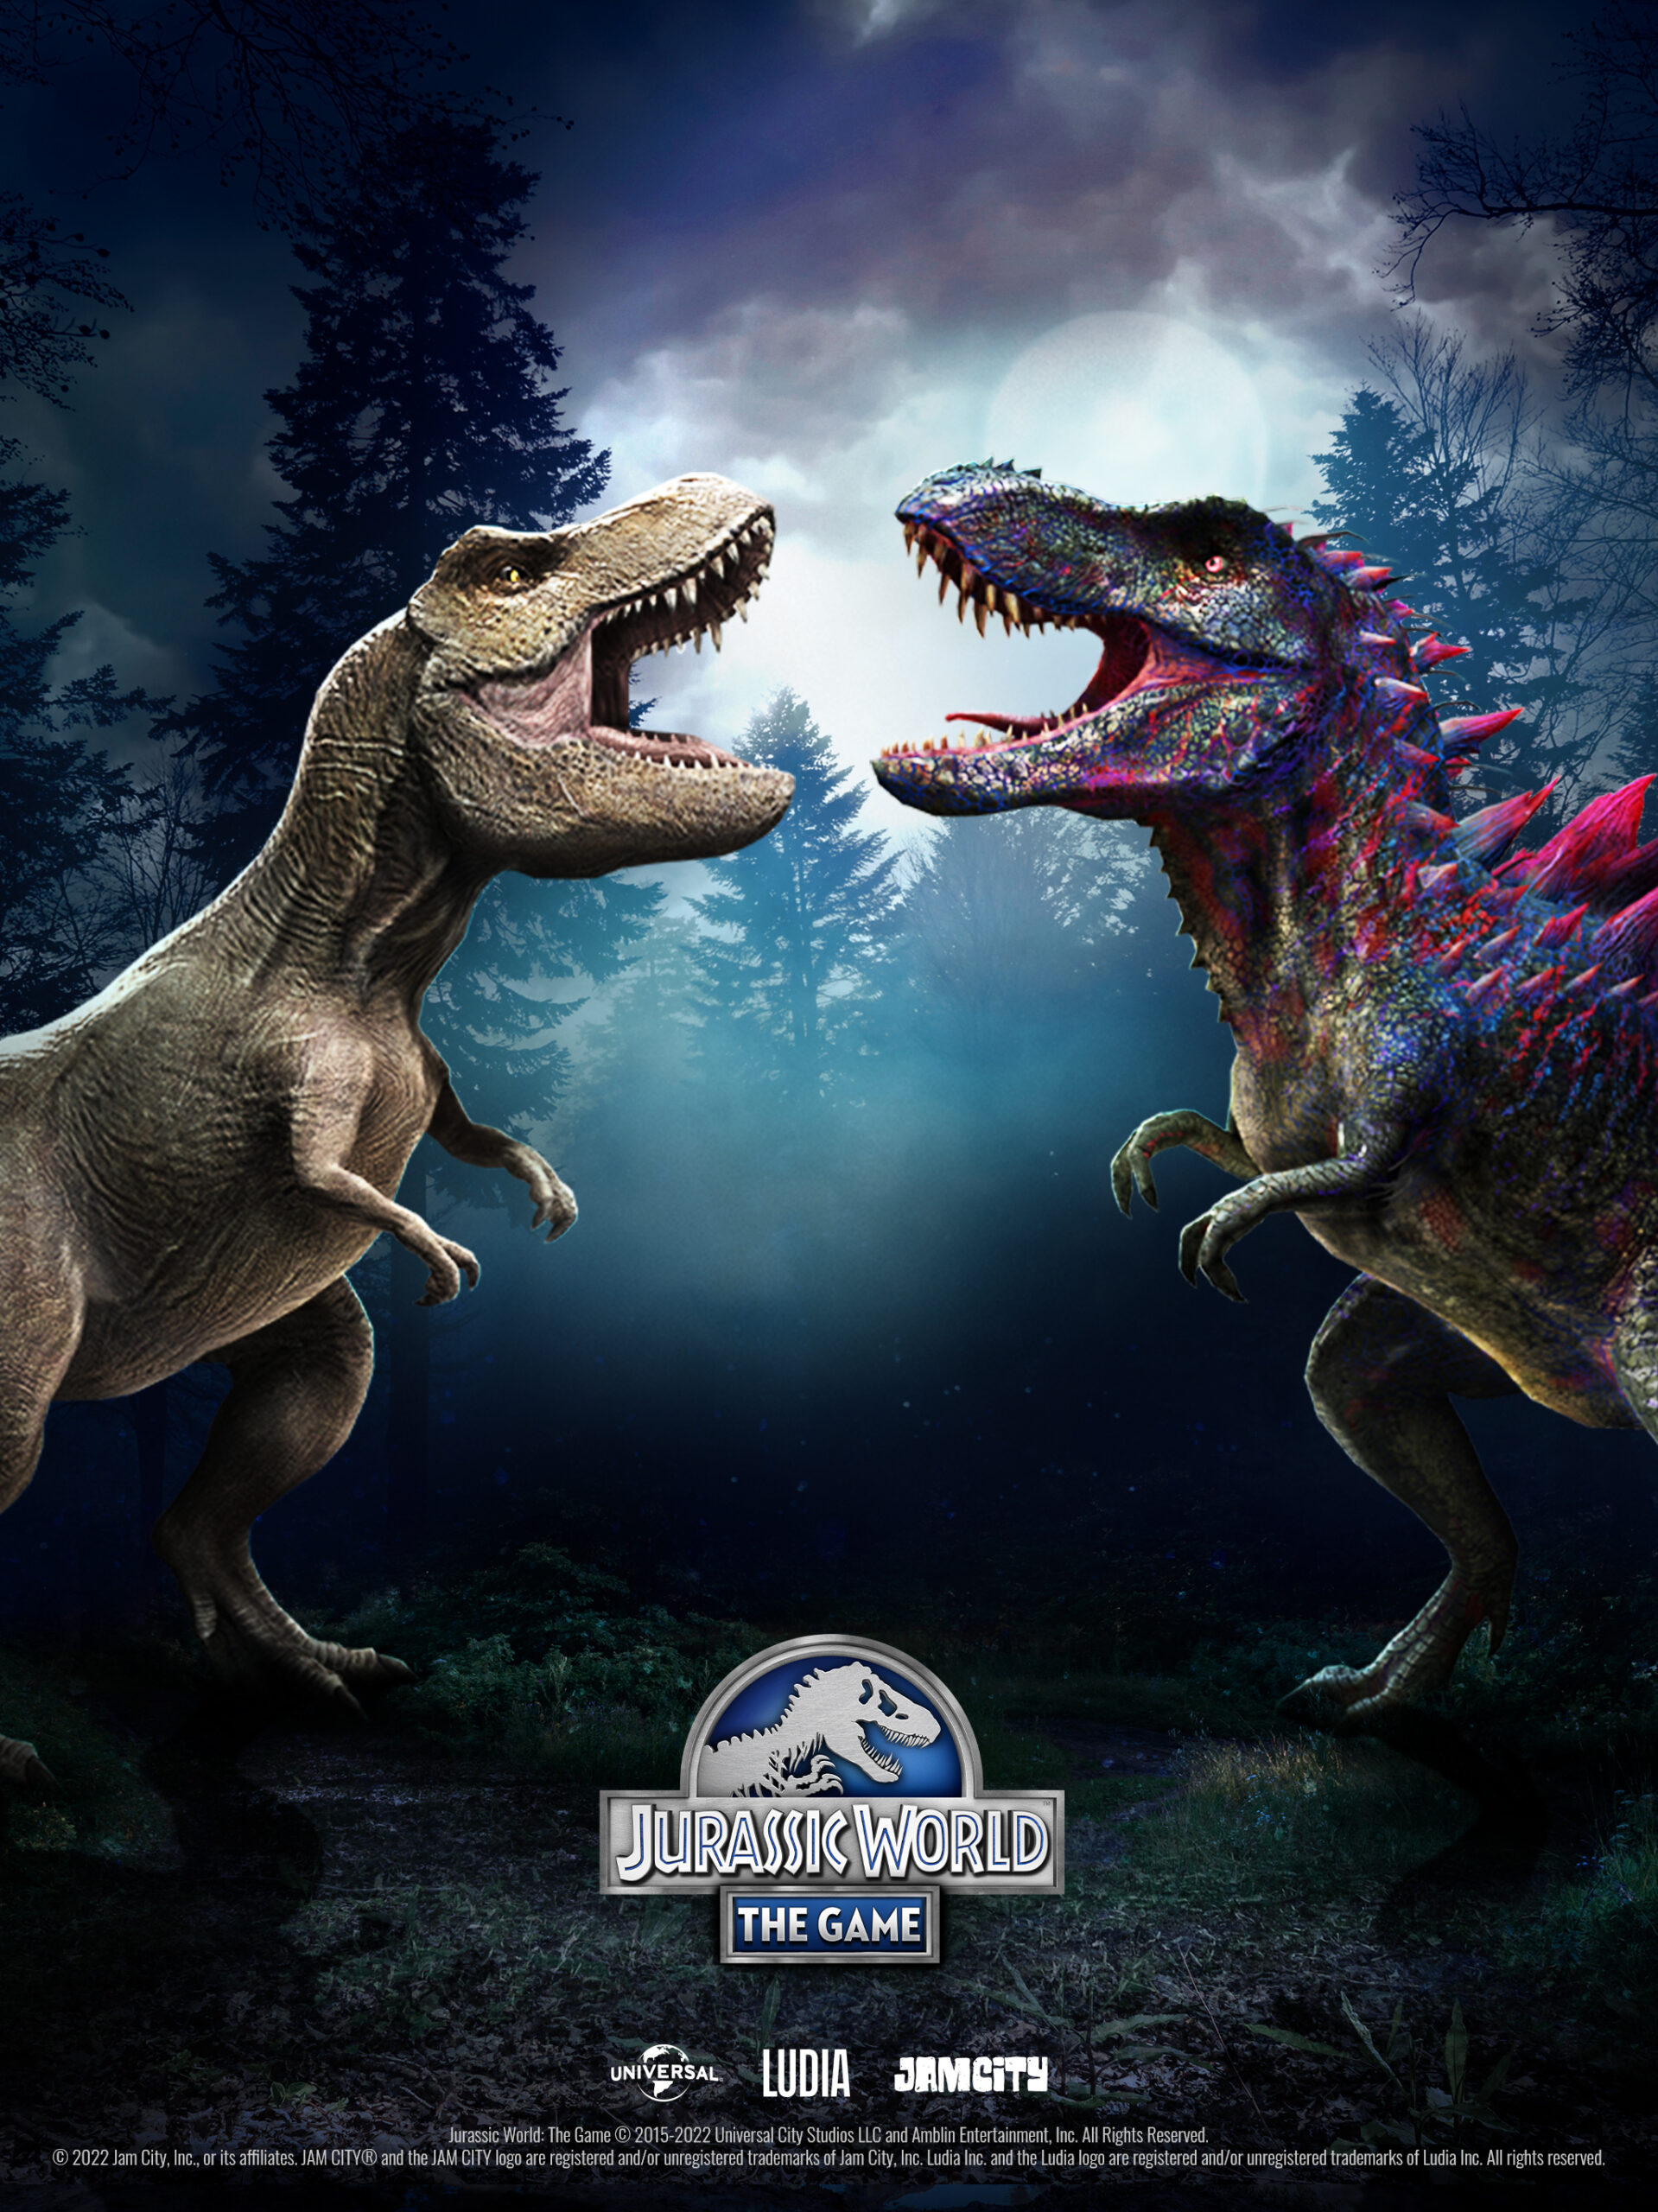 Thế giới khủng long đã trở lại trong một phiên bản điện ảnh thật sự ấn tượng - Jurassic World. Hãy cùng tìm hiểu thêm về những sinh vật được tái tạo sống động nhất đến từ triệu năm trước thông qua hình ảnh.